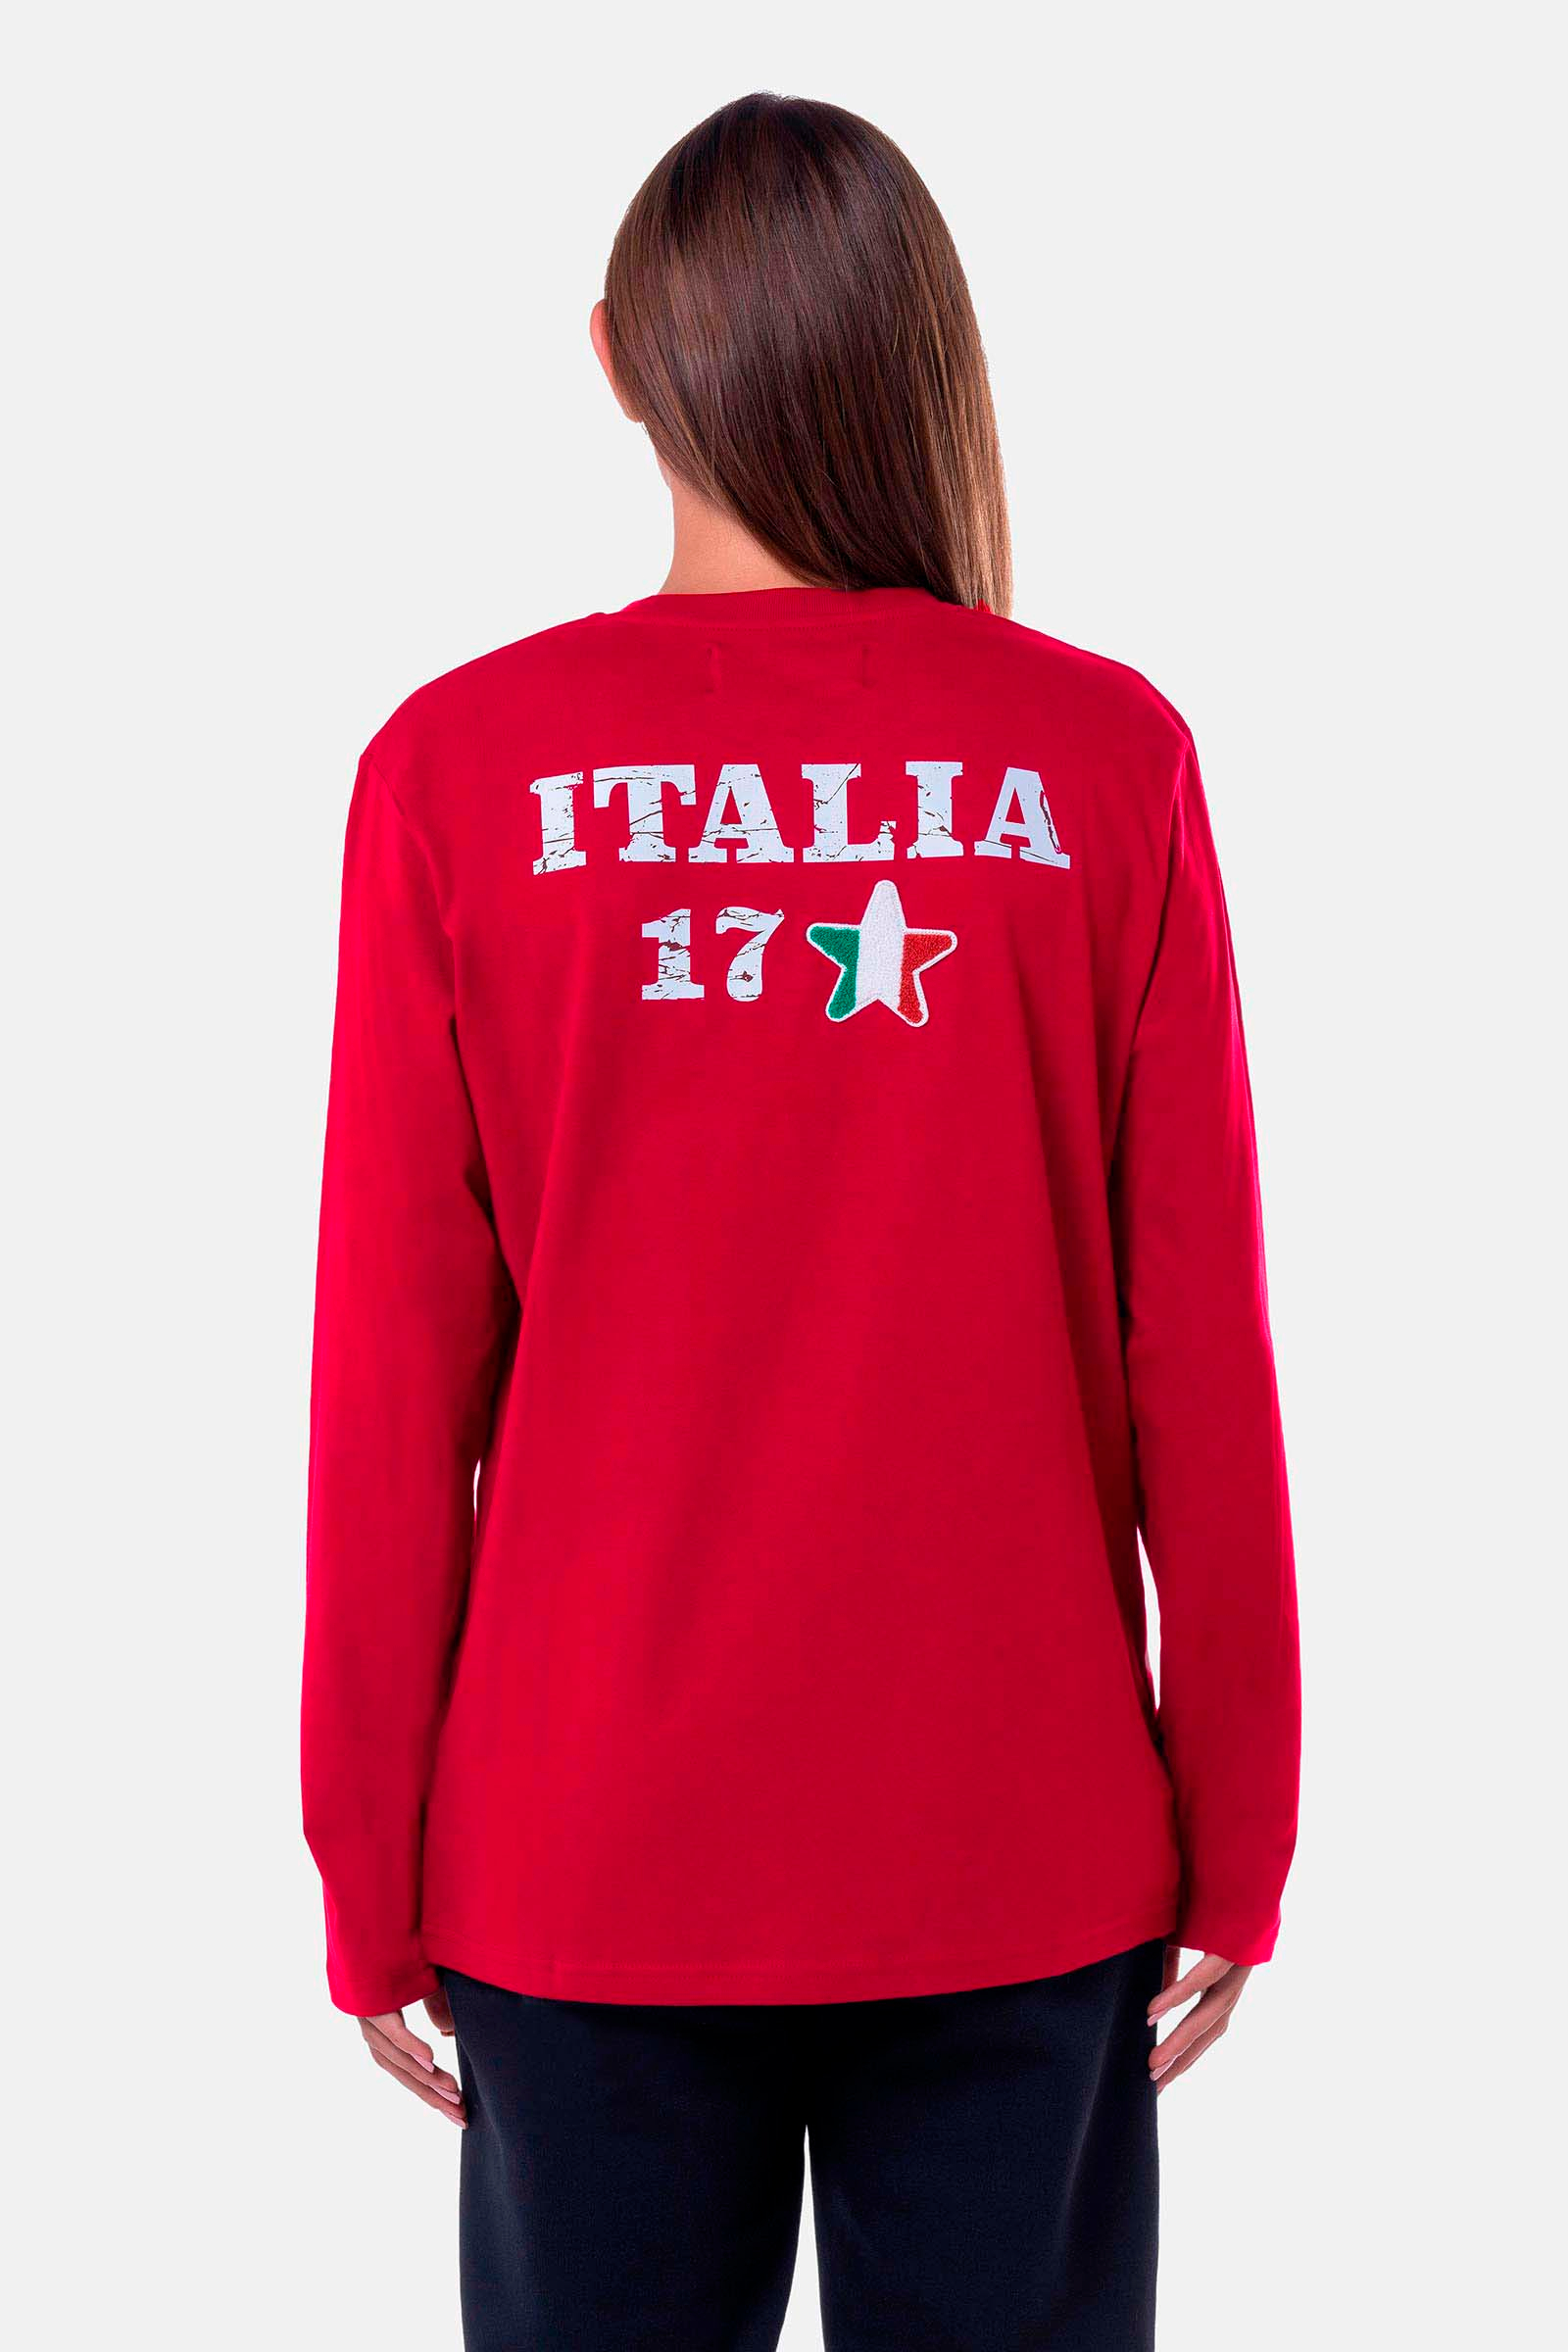 ITALIA 17 T-SHIRT - RED - Hydrogen - Luxury Sportwear